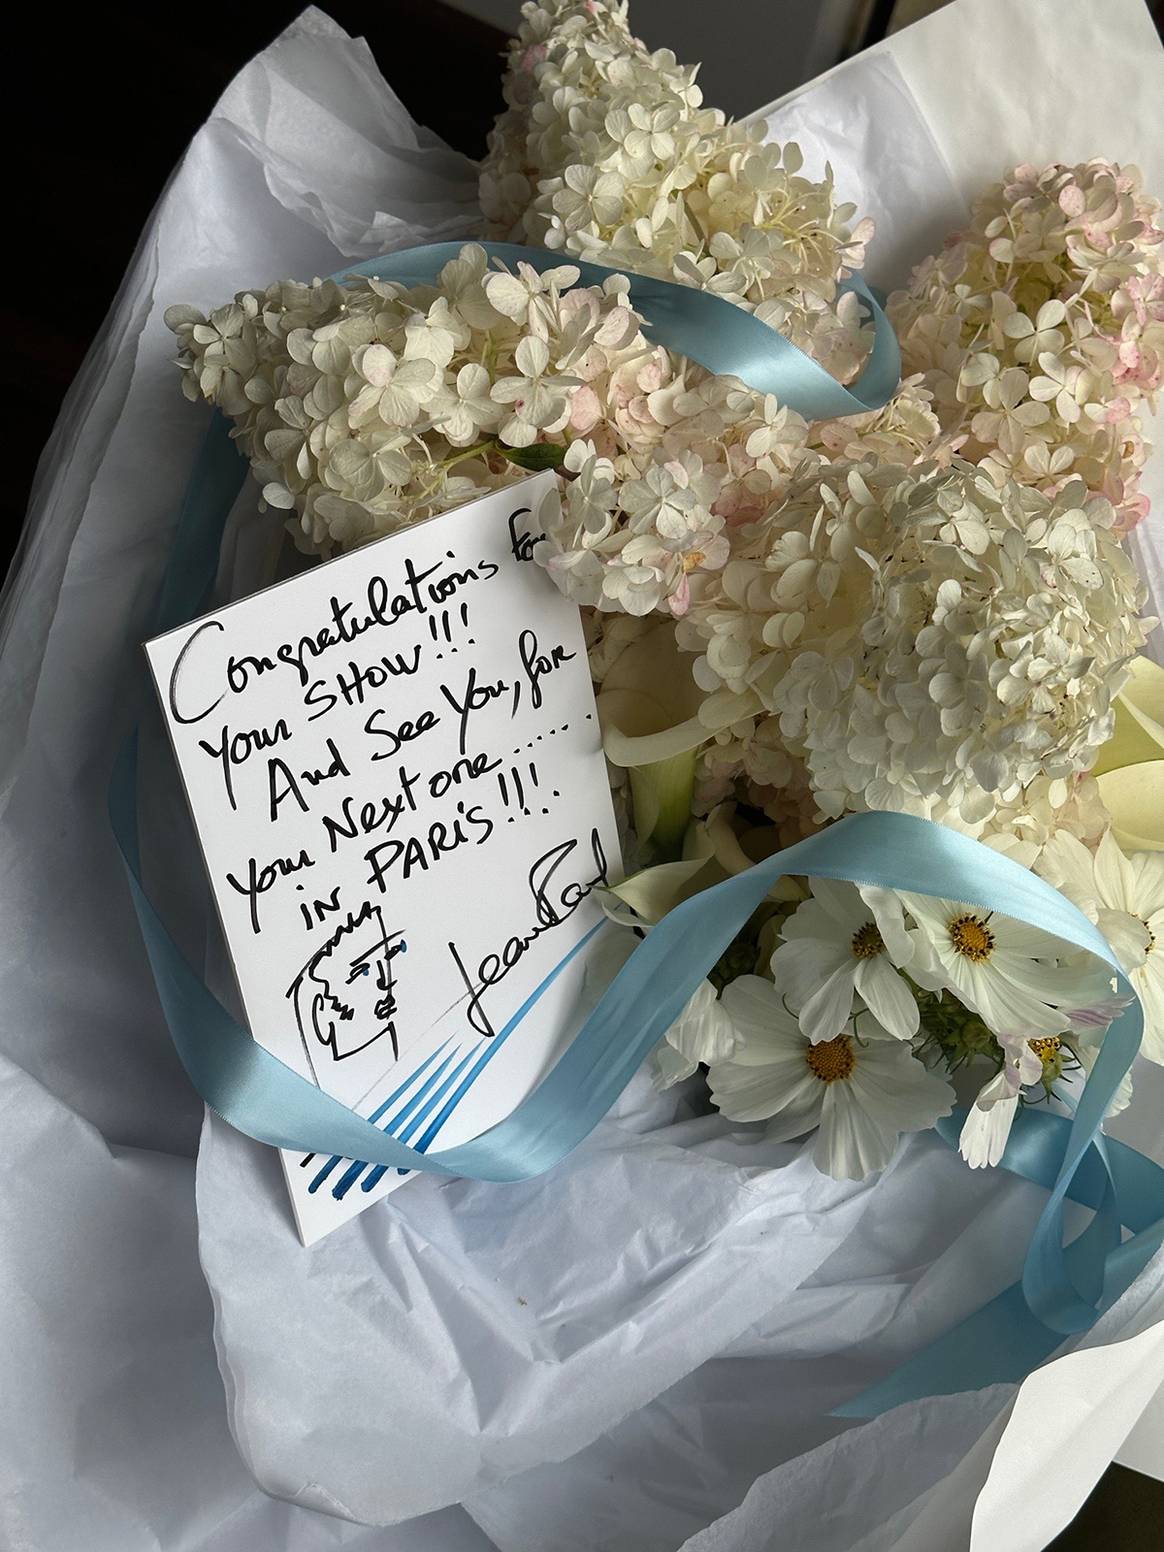 Ramo de flores enviado por Jean Paul Gaultier a Simone Rocha para celebrar su último desfile durante la pasada edición de London Fashion Week.